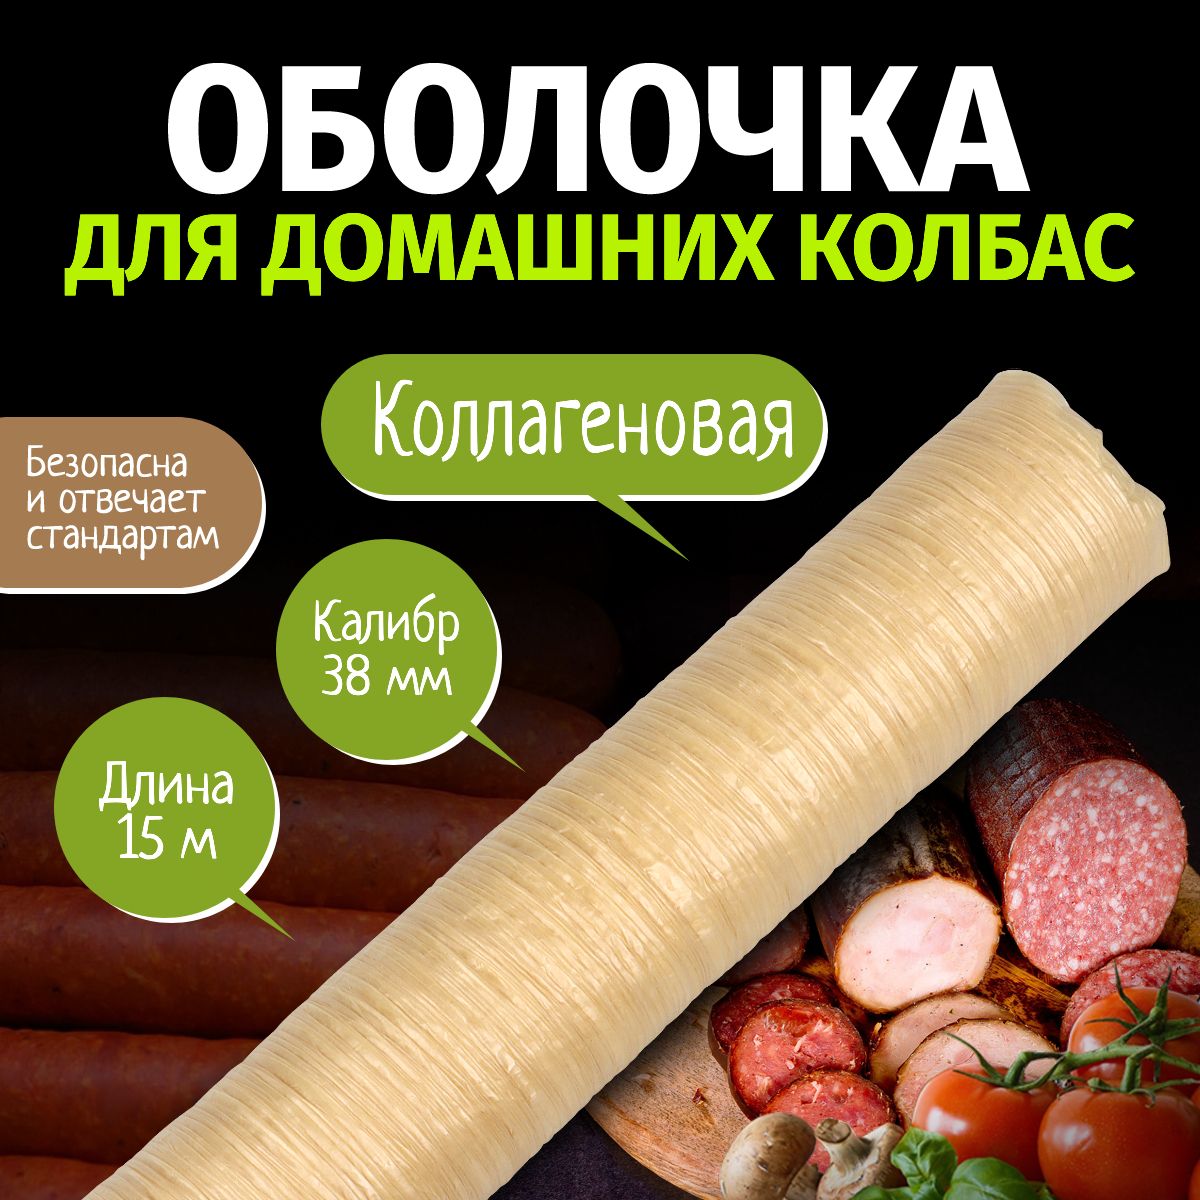 Коллагеноваяоболочкадлядомашнихколбасок,калибр38мм,длина15метров